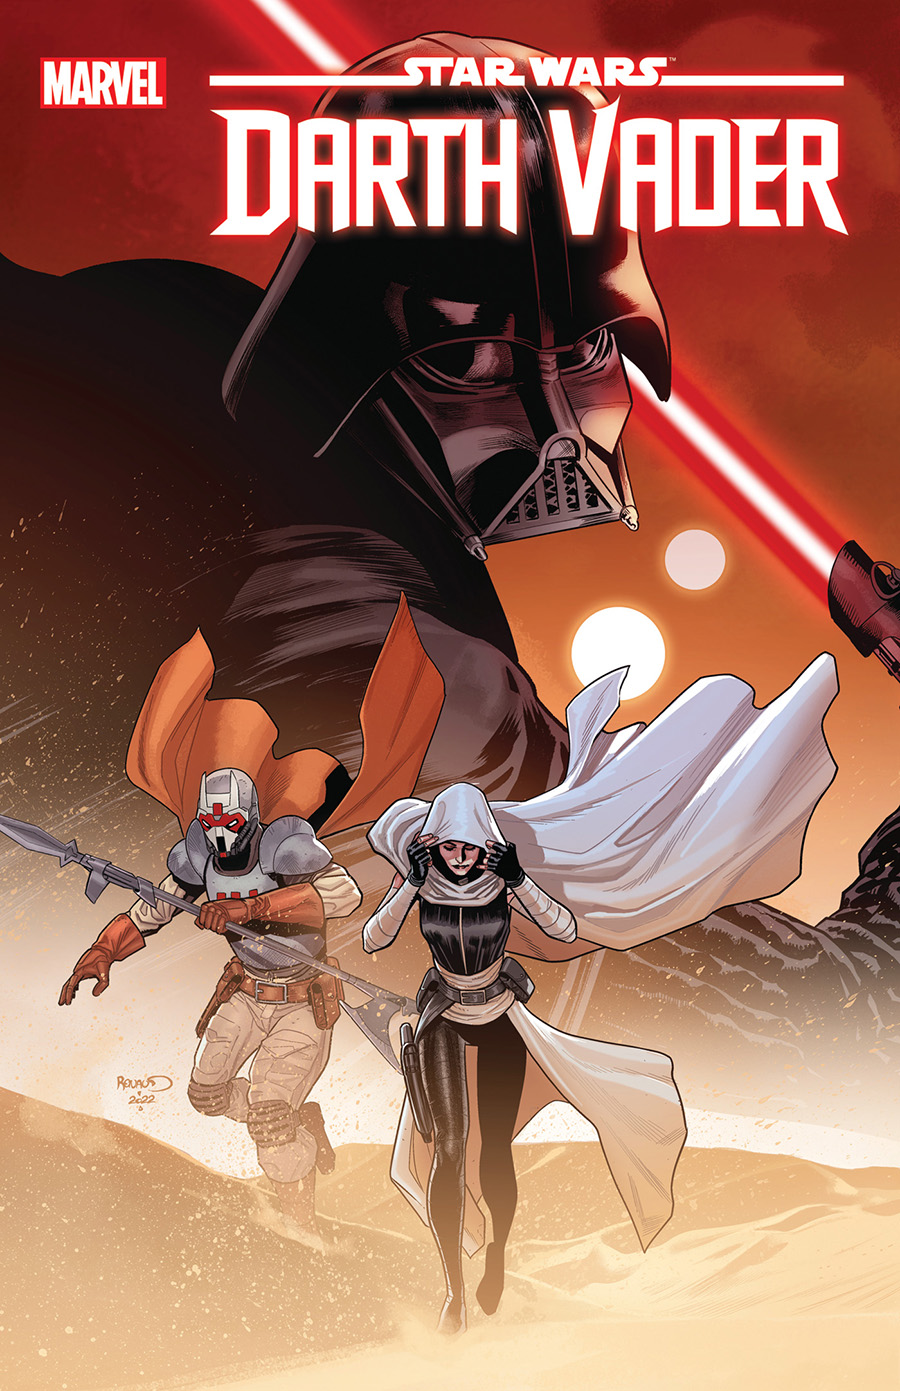 Star Wars Darth Vader #25 Cover A Regular Paul Renaud Cover